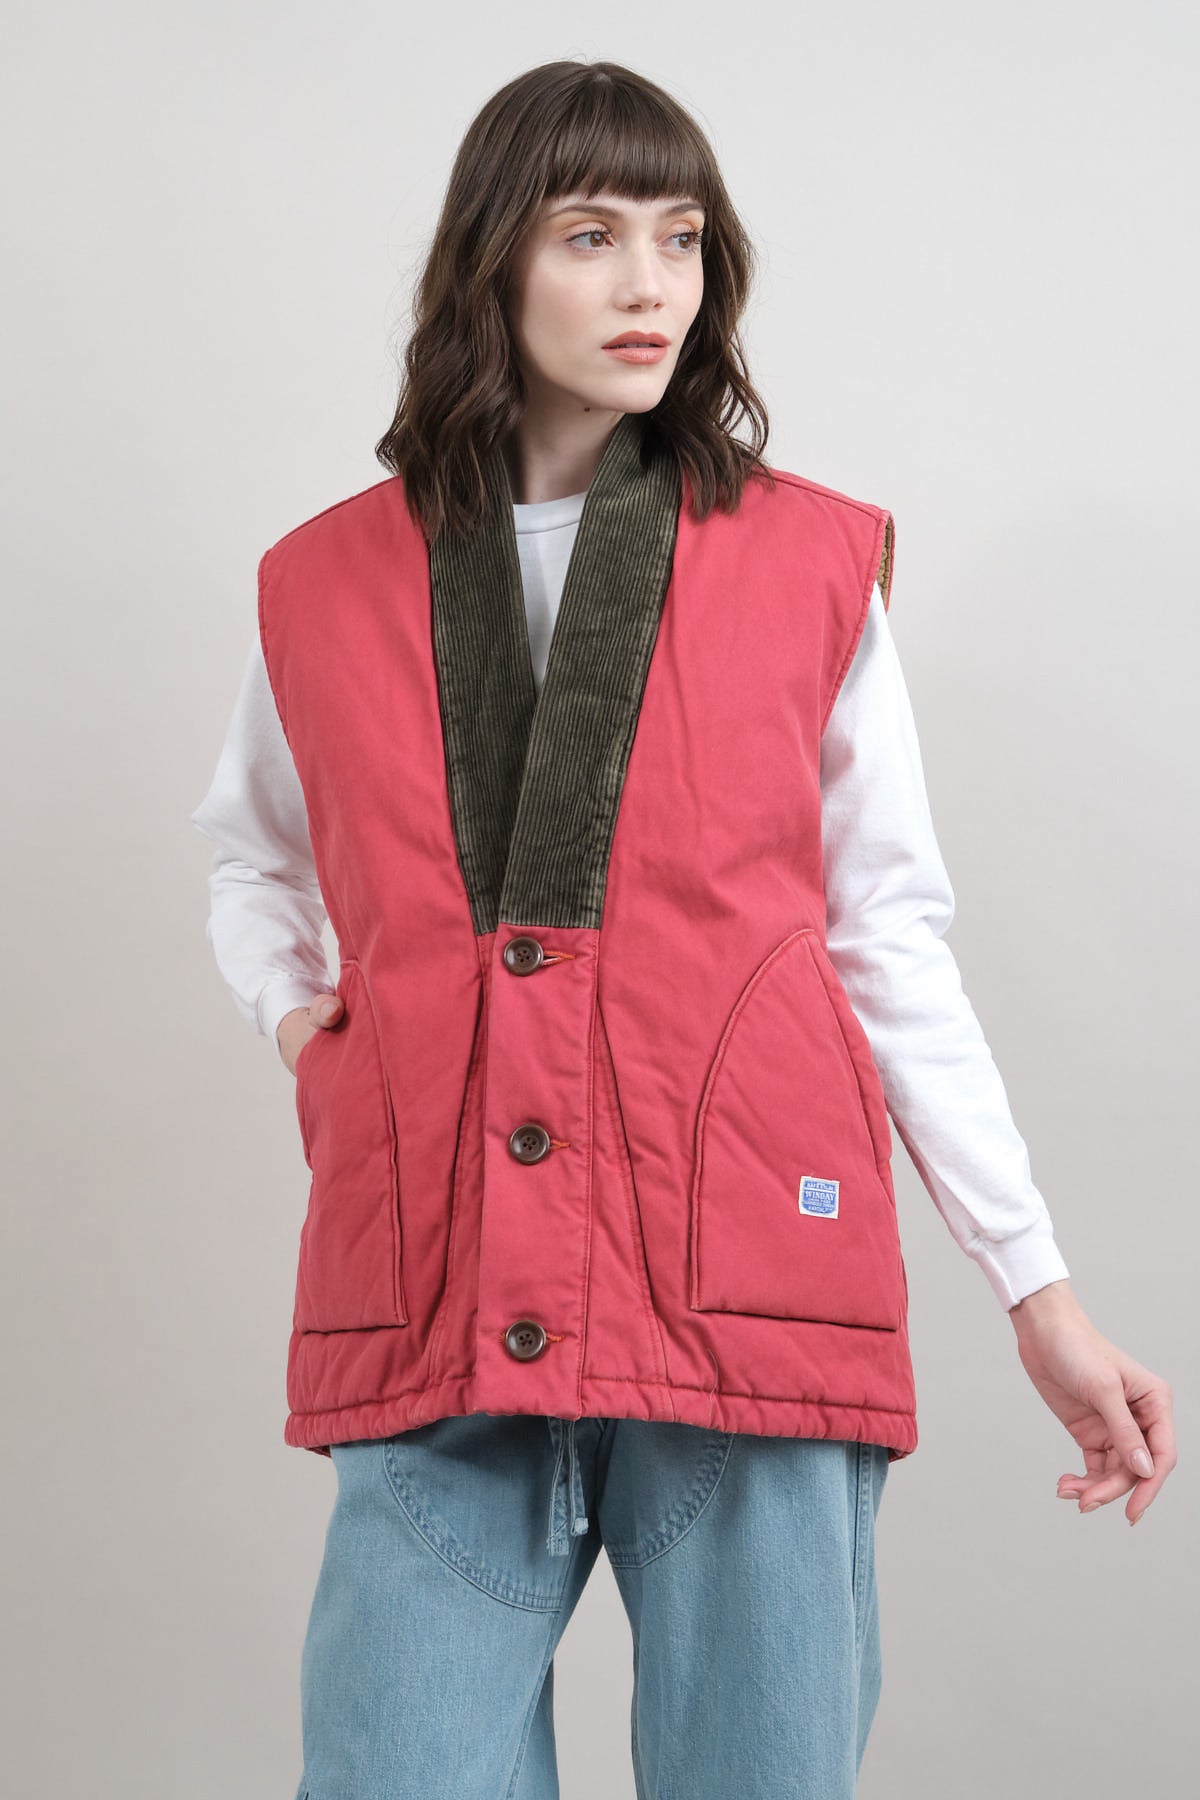 Monogrammed Pink Men's Bomber Jacket - Thotful Clothing®